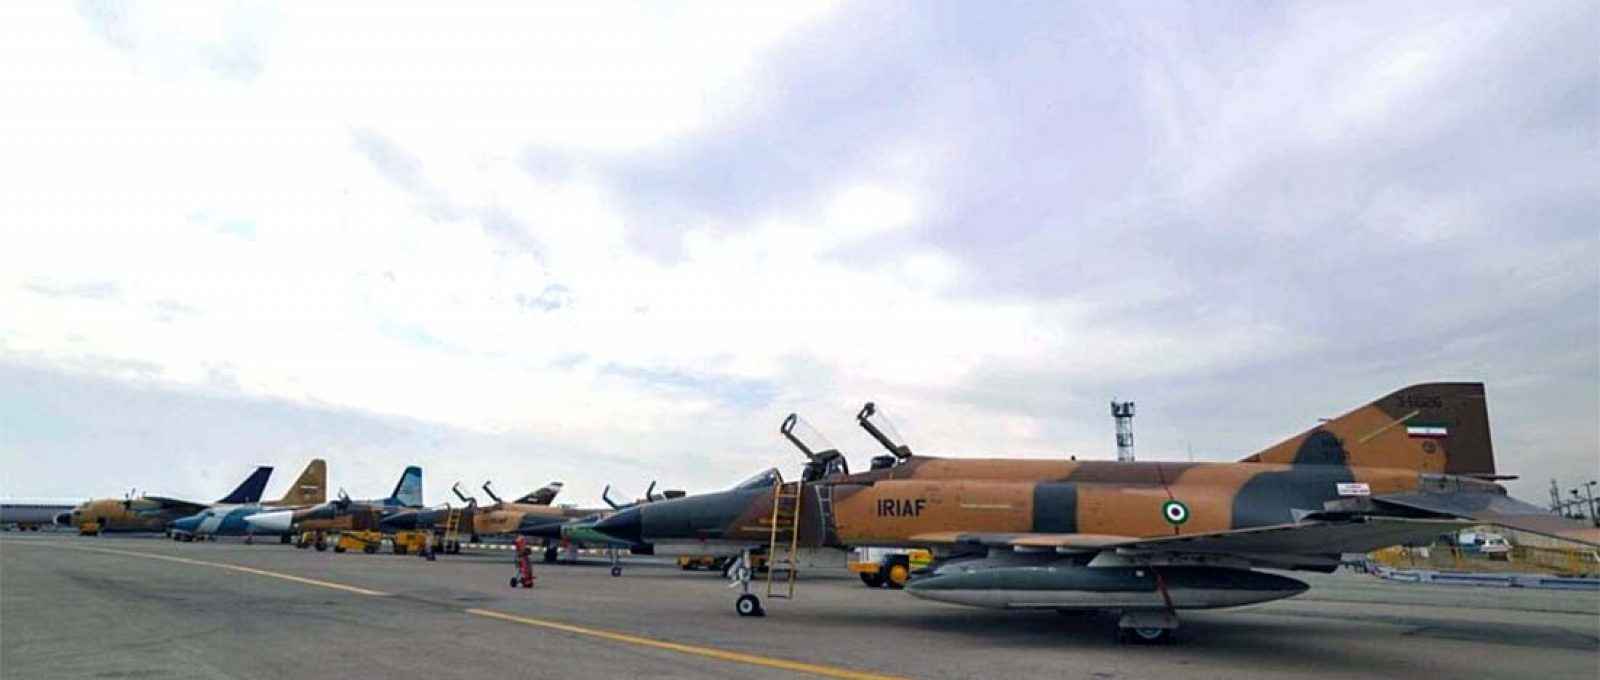 Aeronaves militares revisadas entregues à Força Aérea do Irã em 20 de fevereiro de 2020 (Foto: MEHR).